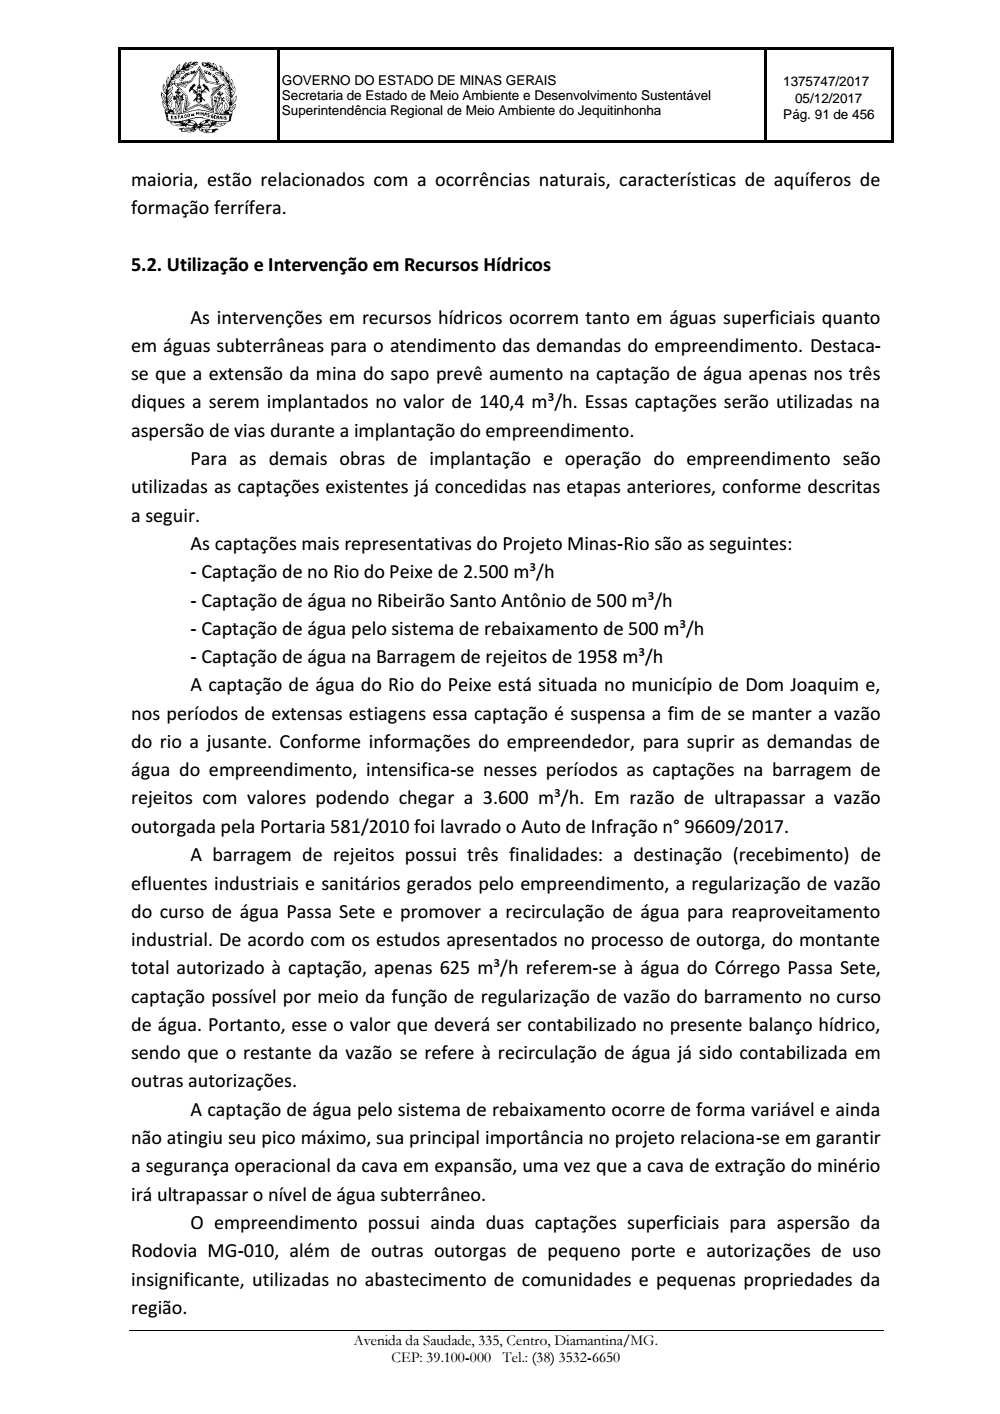 Page 91 from Parecer único da Secretaria de estado de Meio Ambiente e Desenvolvimento Sustentável (SEMAD)